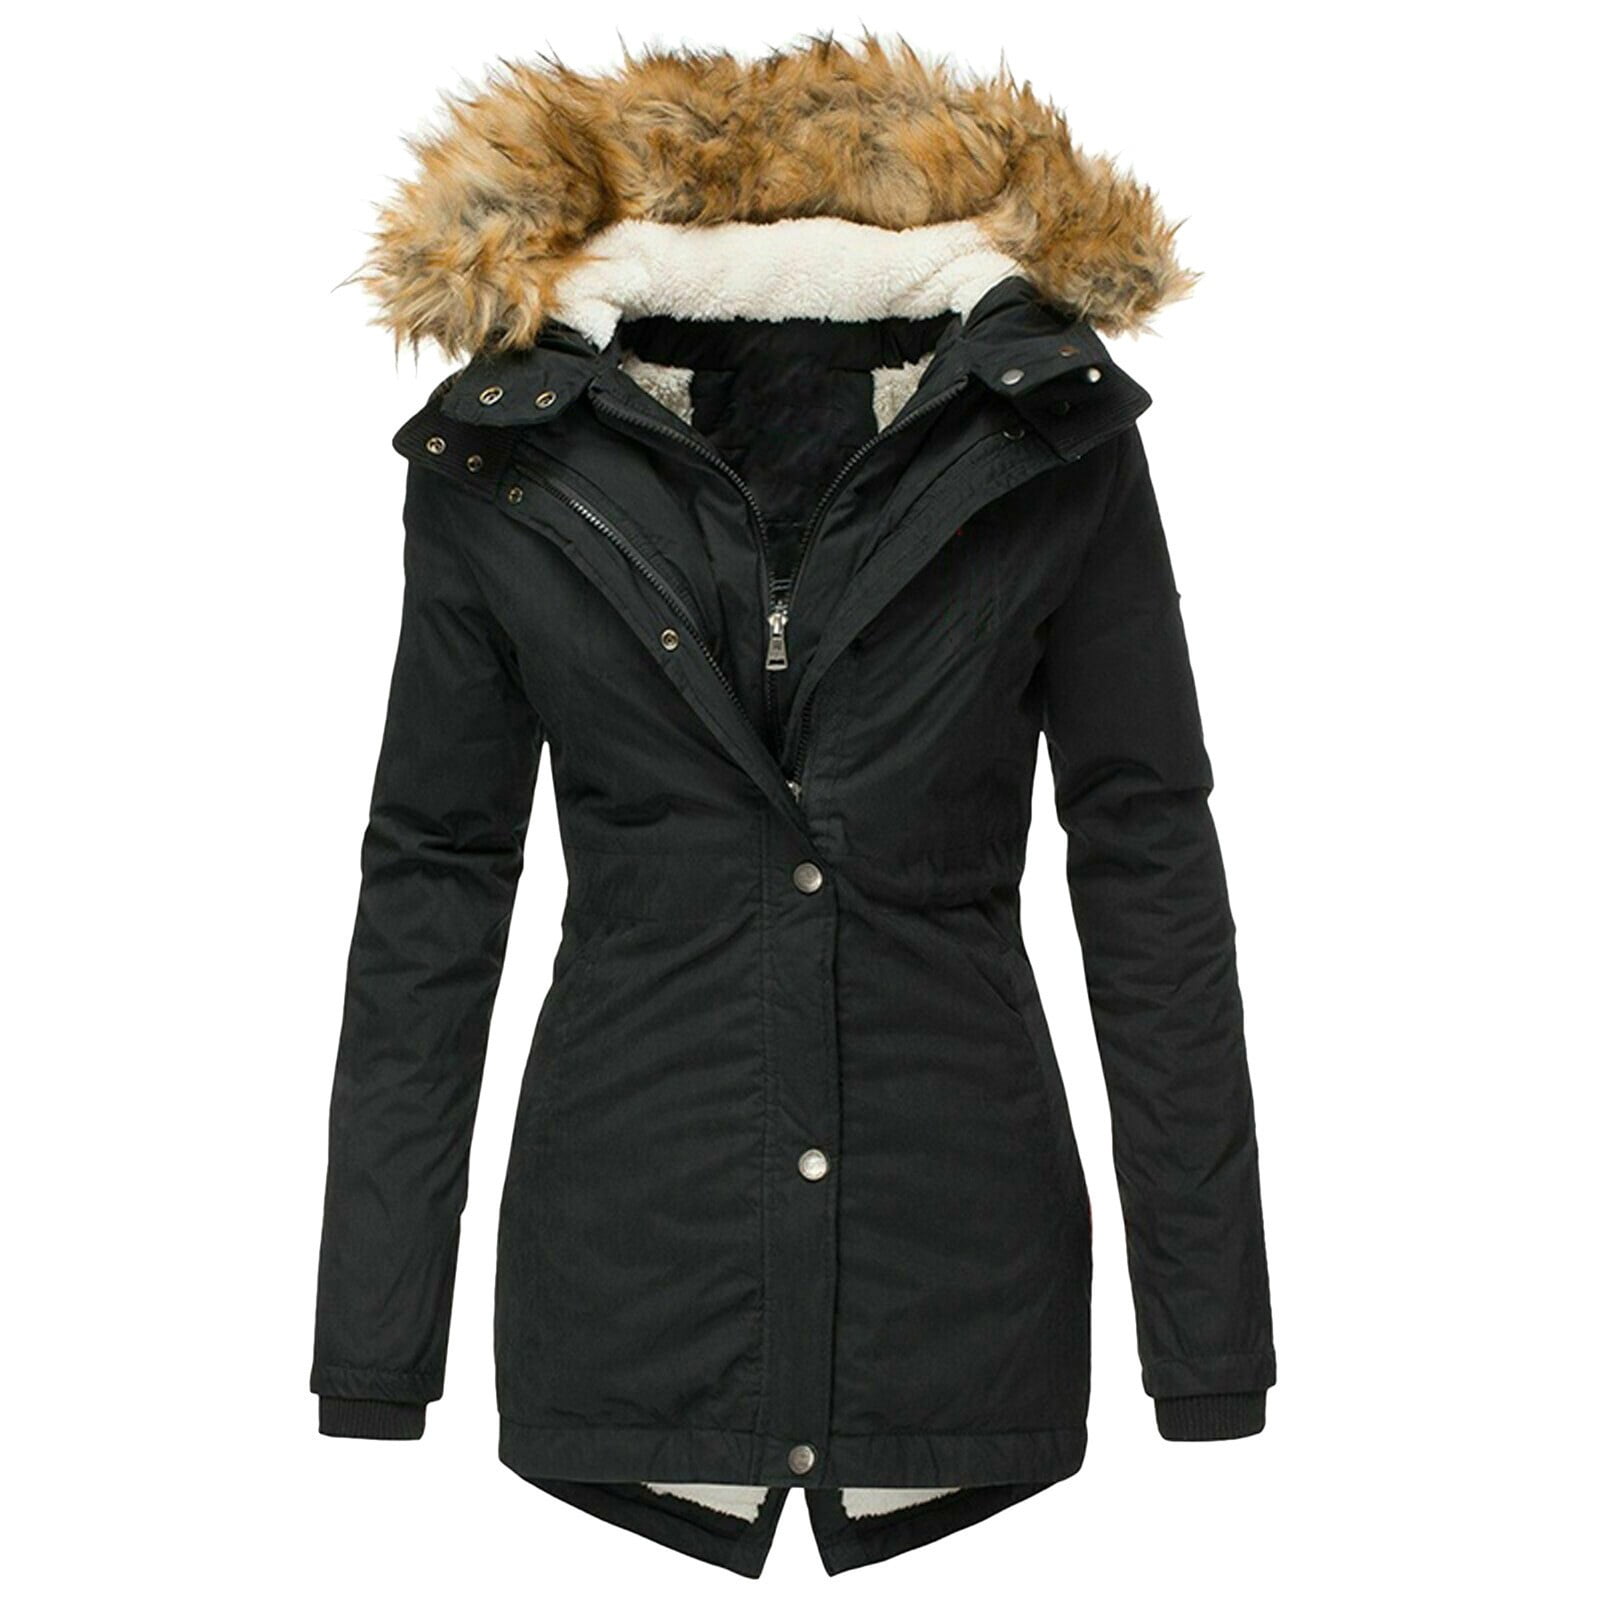 TBKOMH Womens Lightweight Puffer Jacket, Winter Coats for Women Warm ...